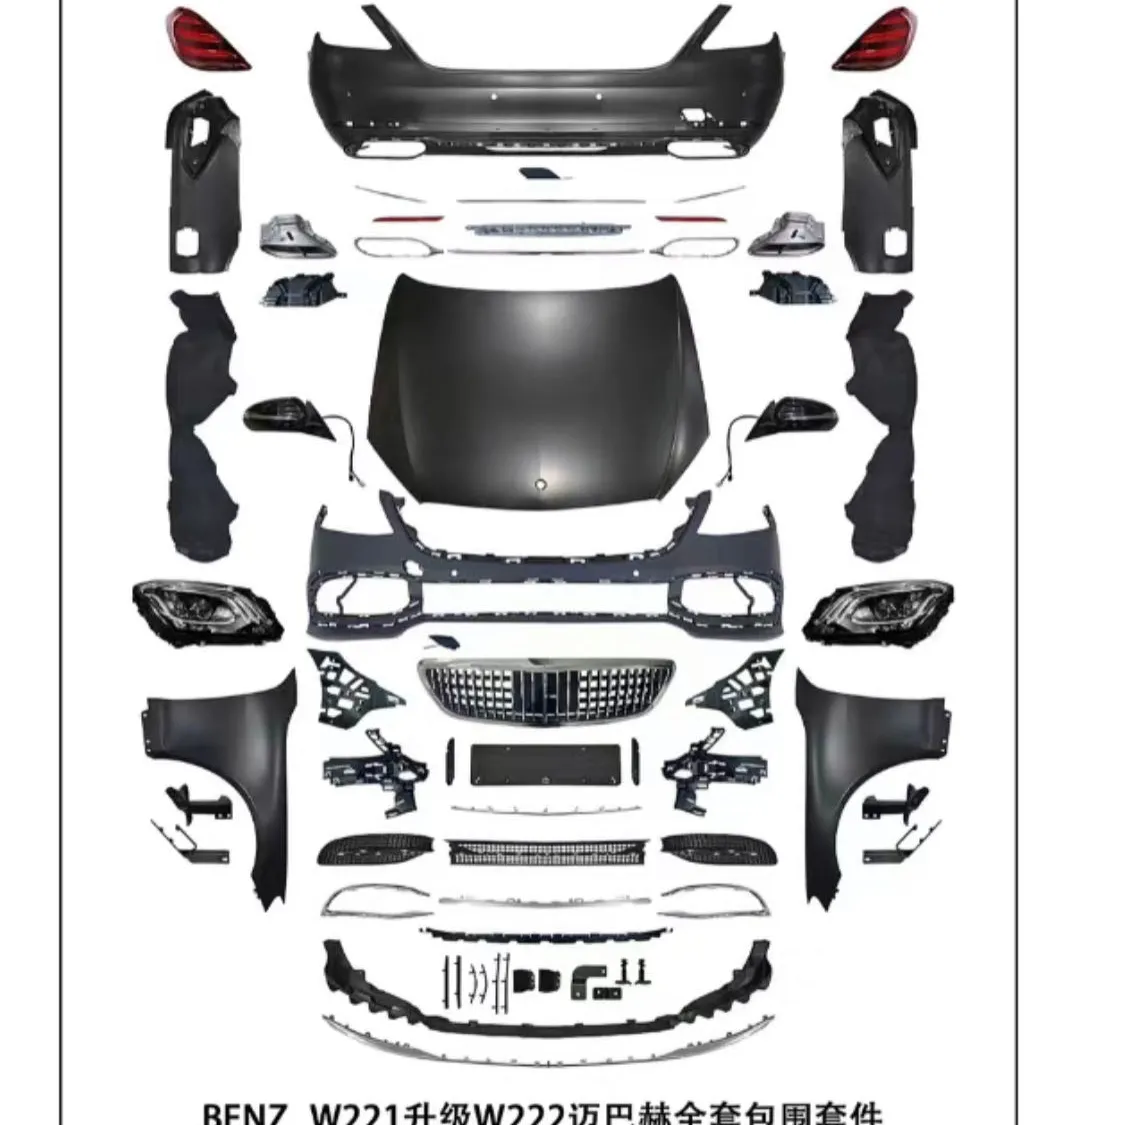 Maybach estilo corpo kit pára-choques traseiro dianteiro para Mercedes benz s classe w221 2014-2020 para w222 maybach faróis traseiras capô